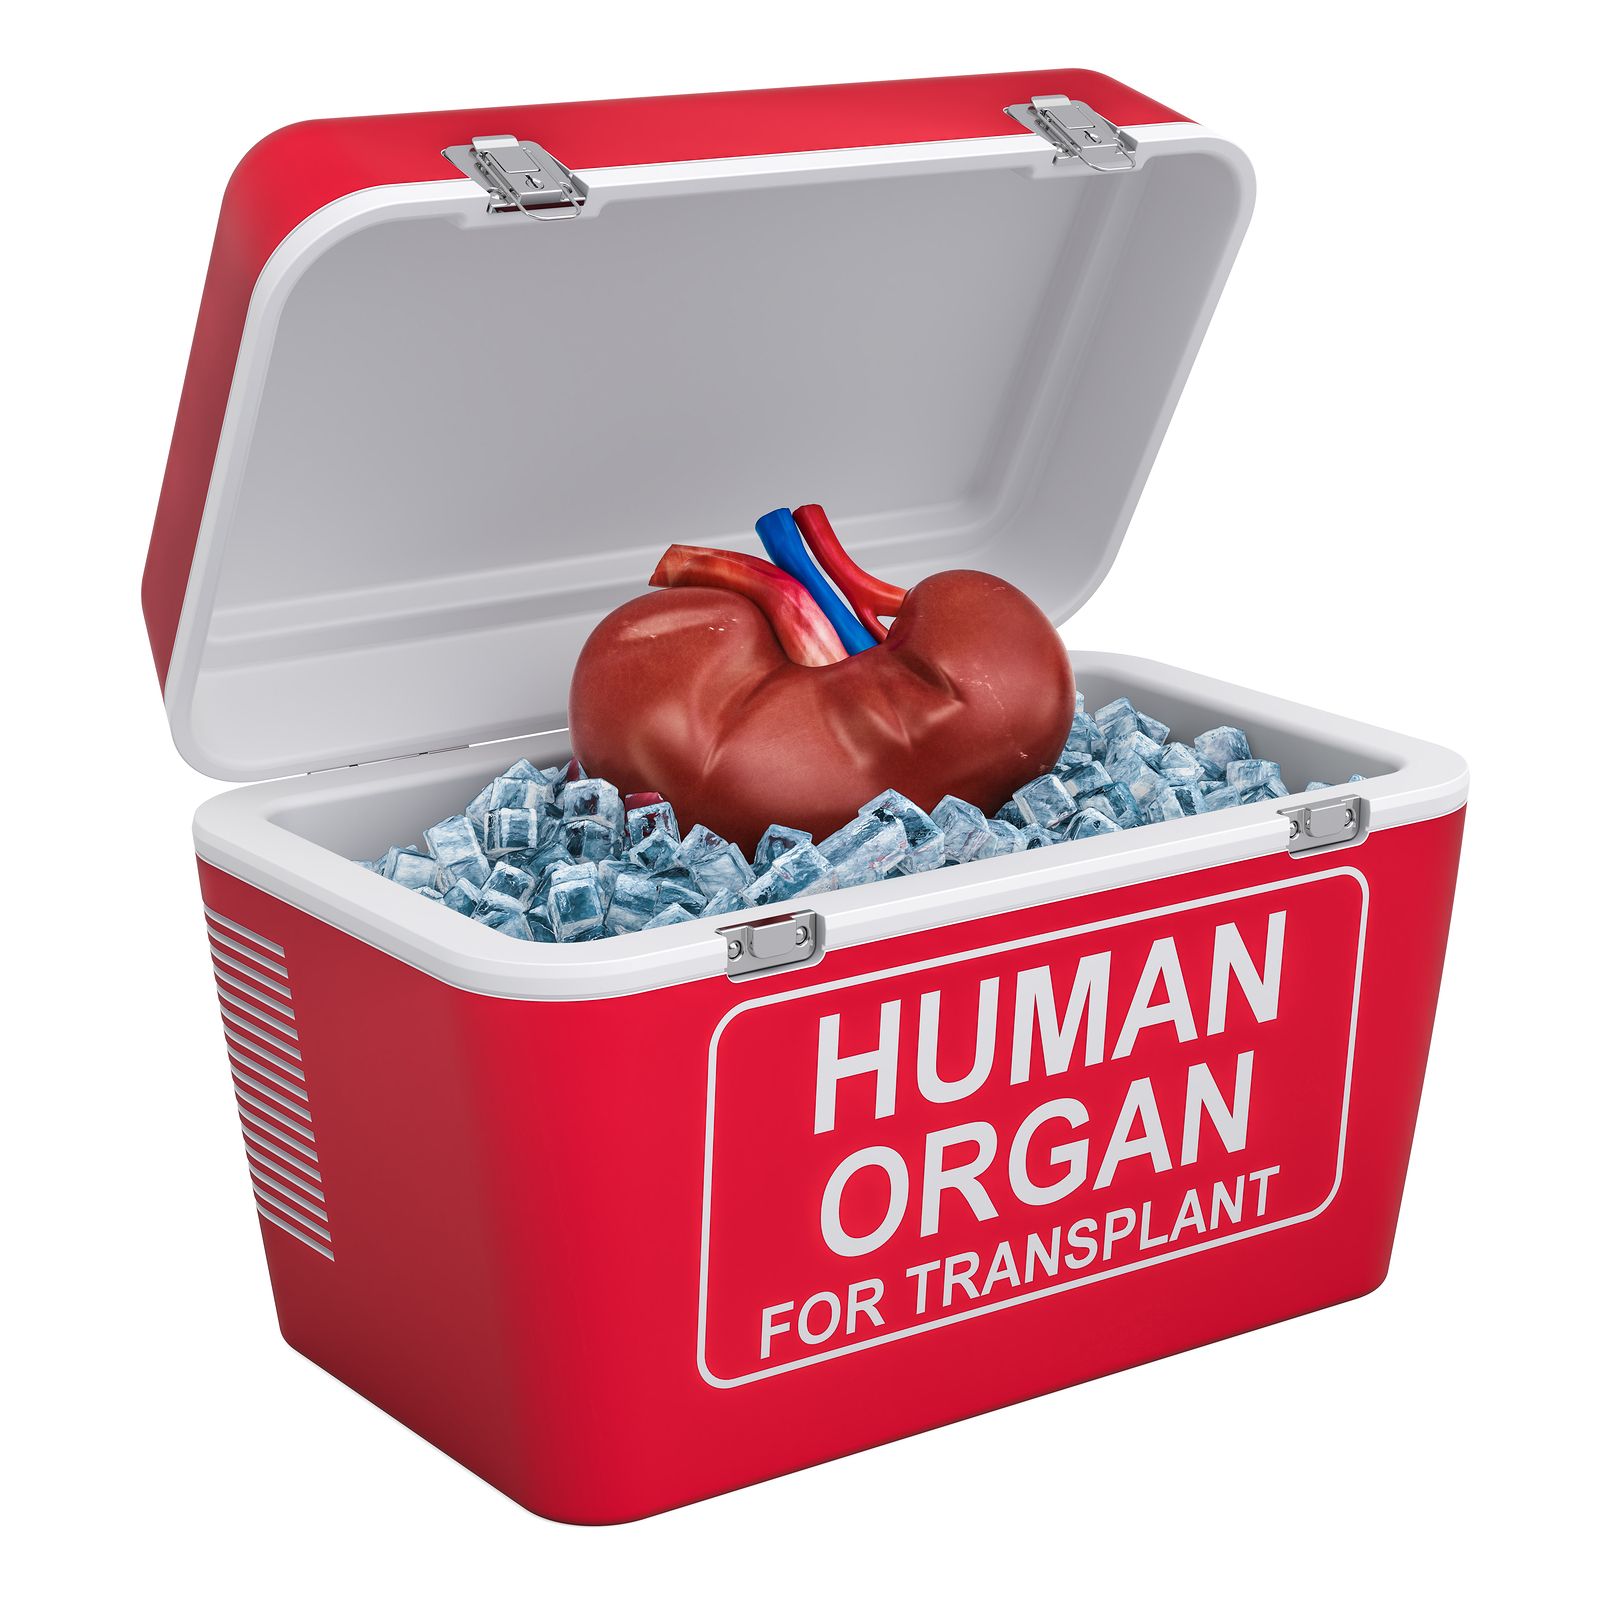 Órgano compatible para un transplante sin rechazo